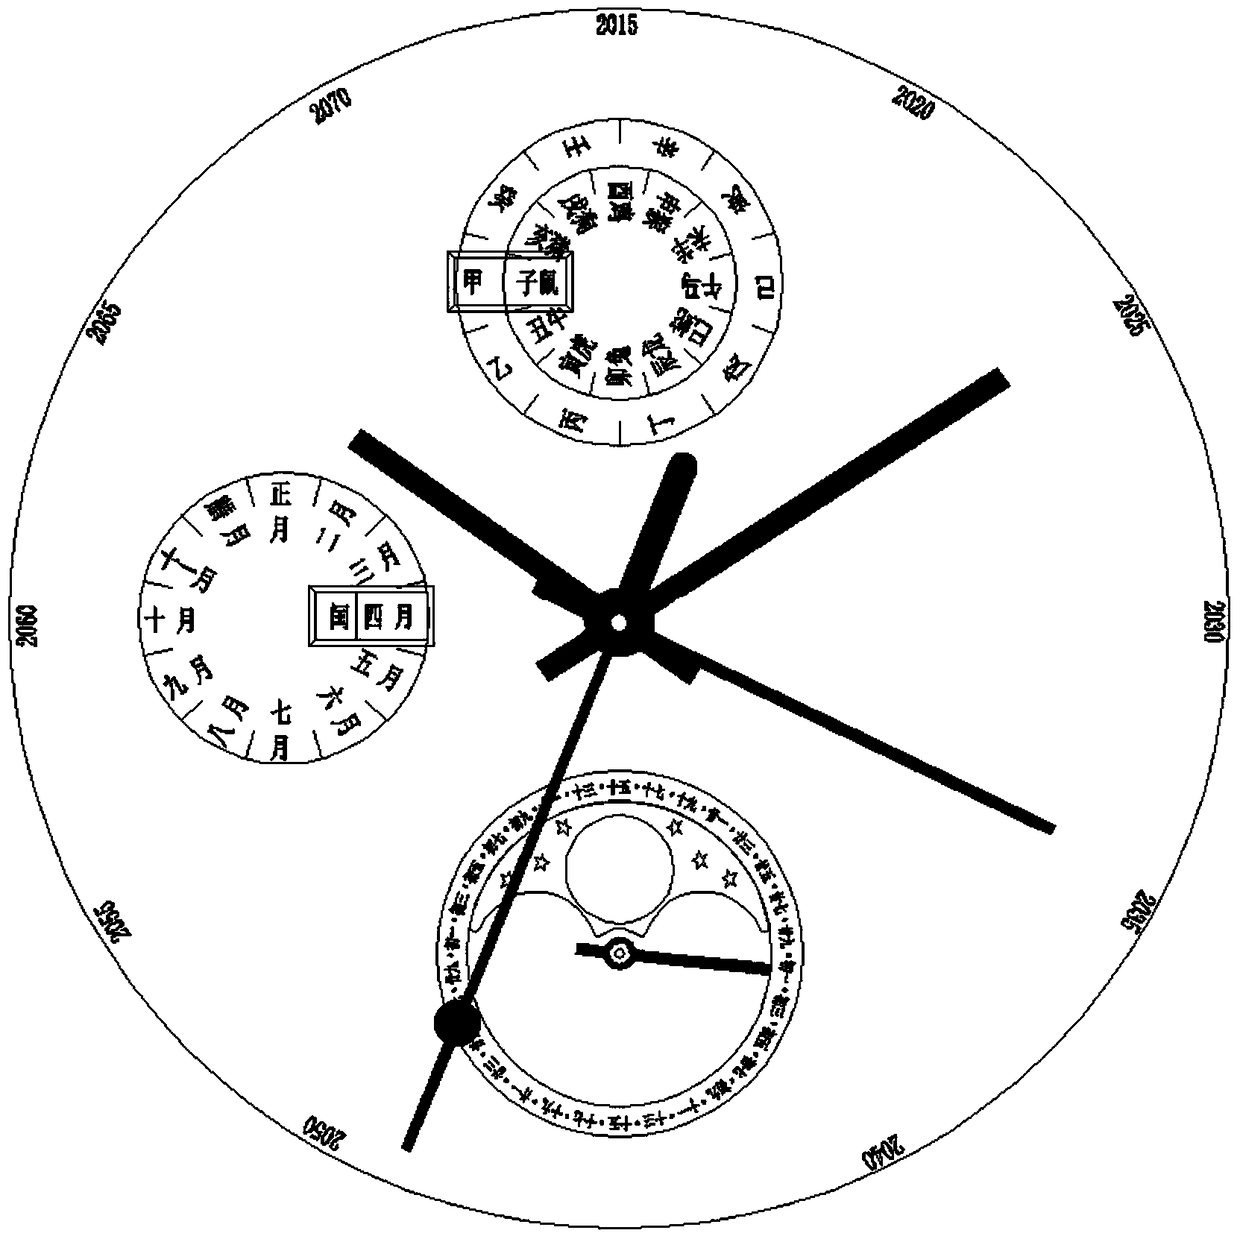 A watch with a lunar calendar indicating mechanism